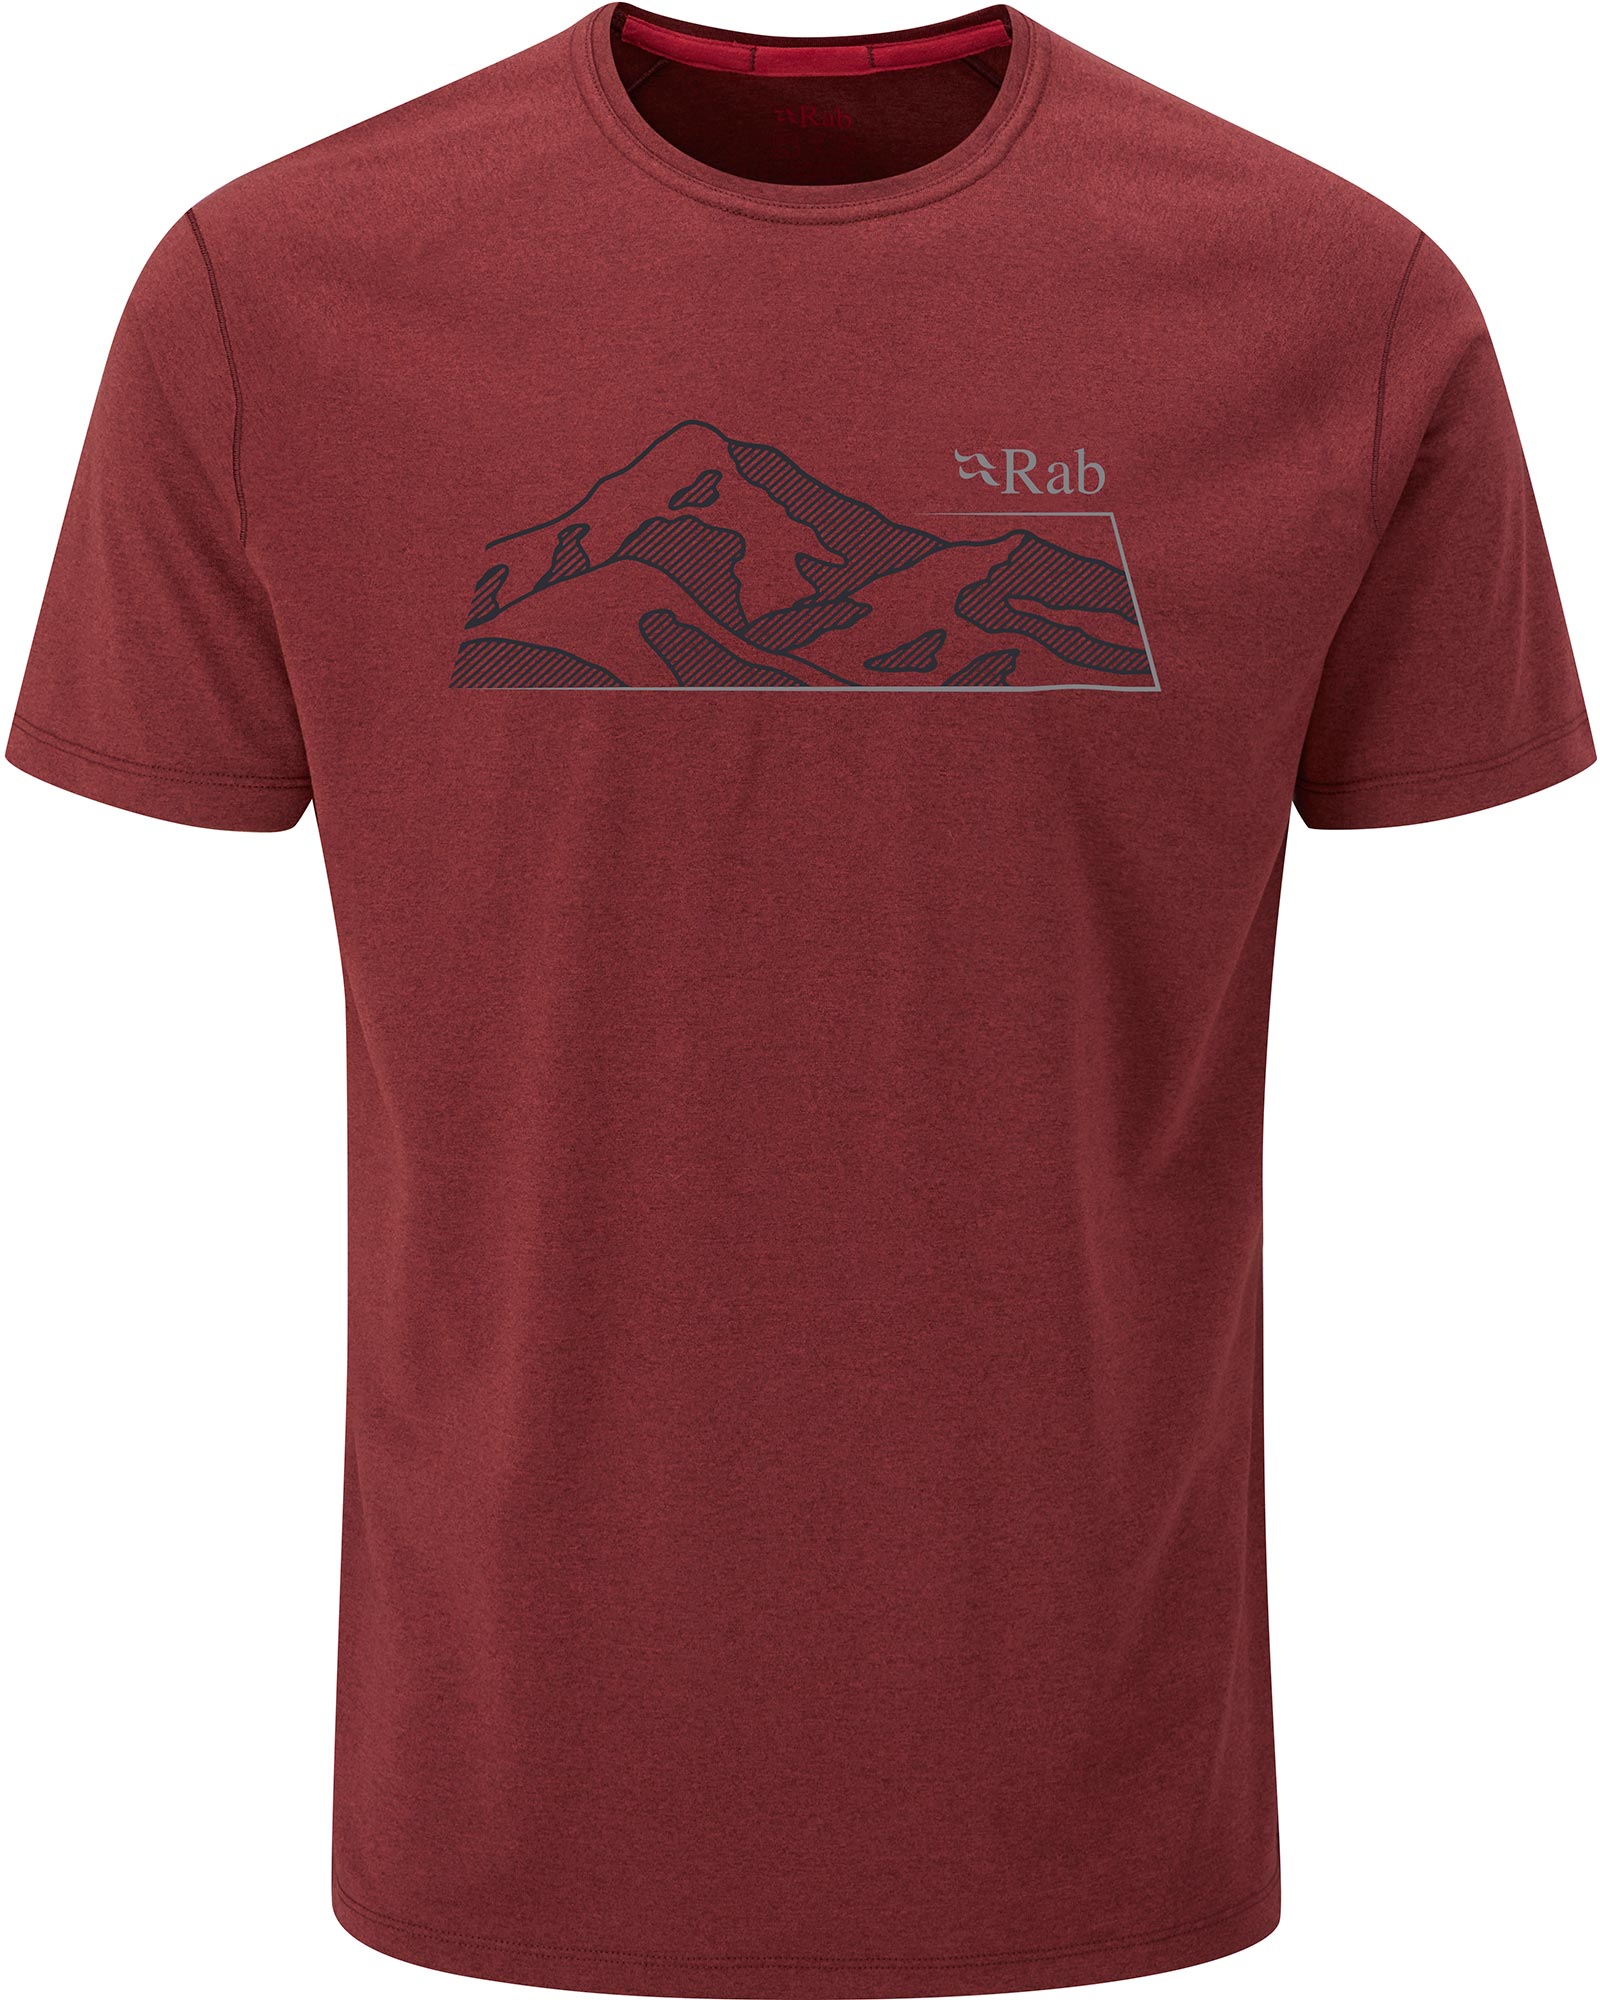 Rab Mantle Mountain Men’s T Shirt - Oxblood Red Marl M